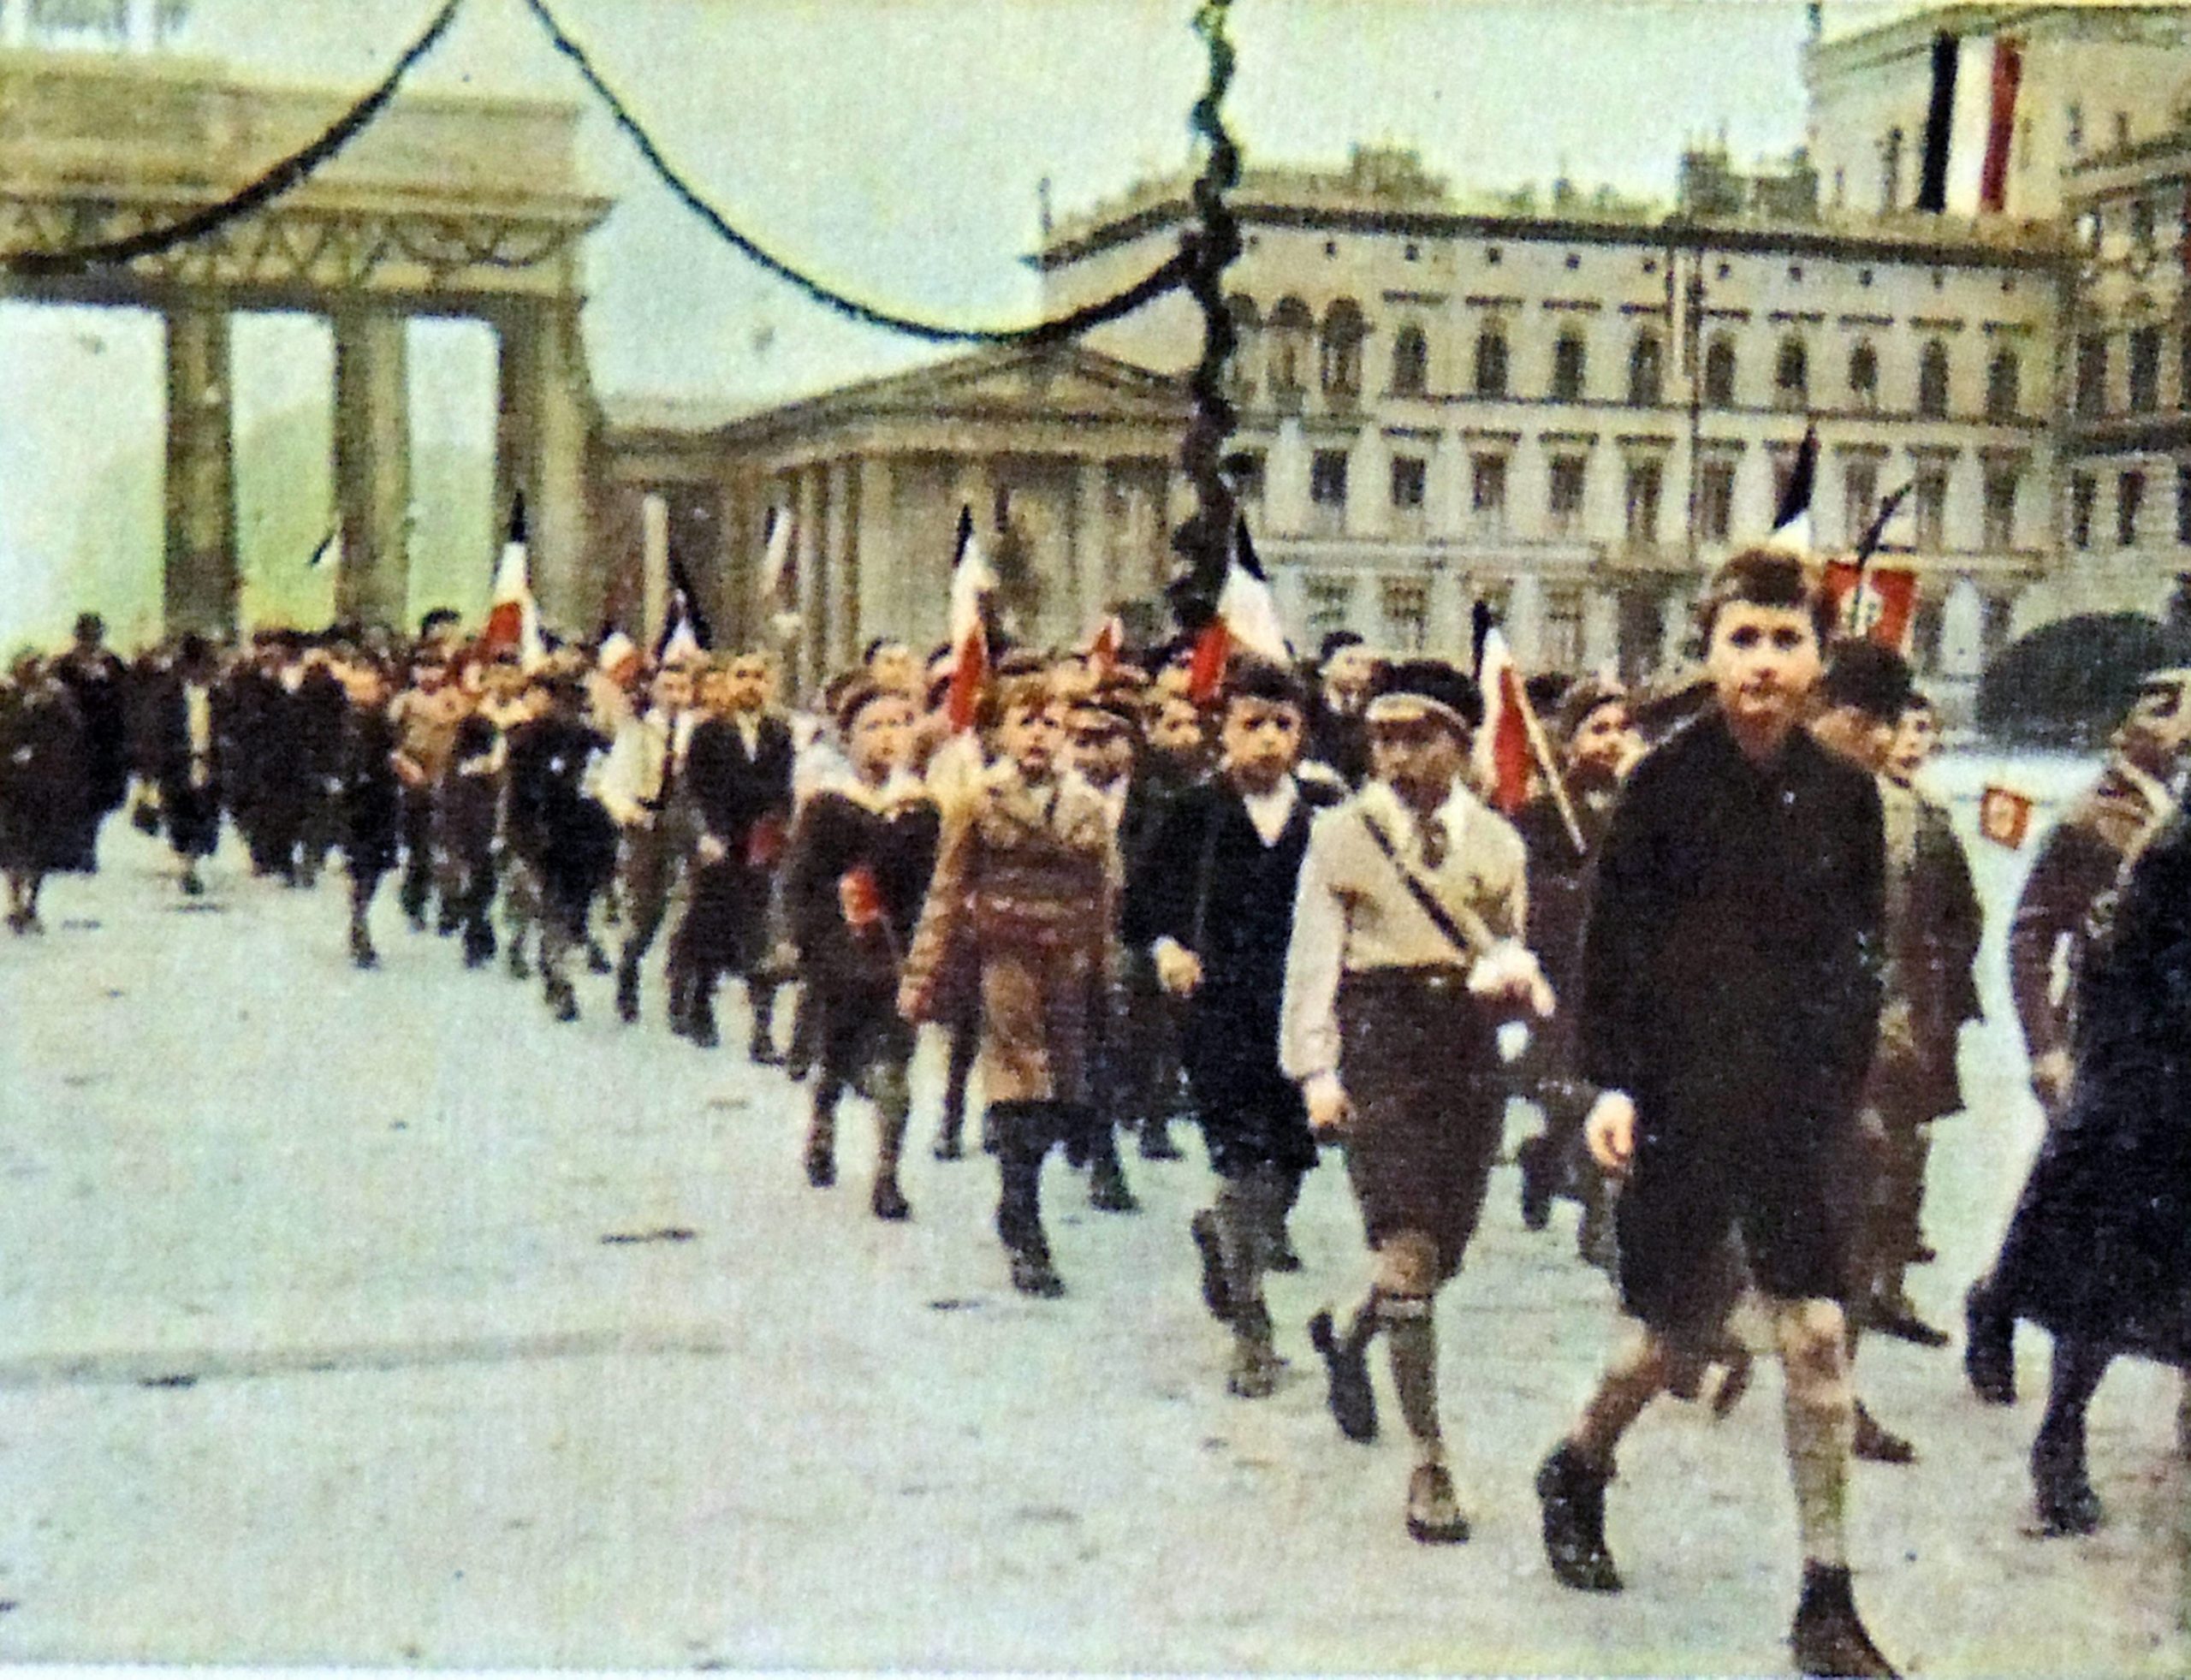 Die Hitlerjugend marschiert durch das Brandenburger Tor, 1935. Foto: Imago/Wha/United Archives International